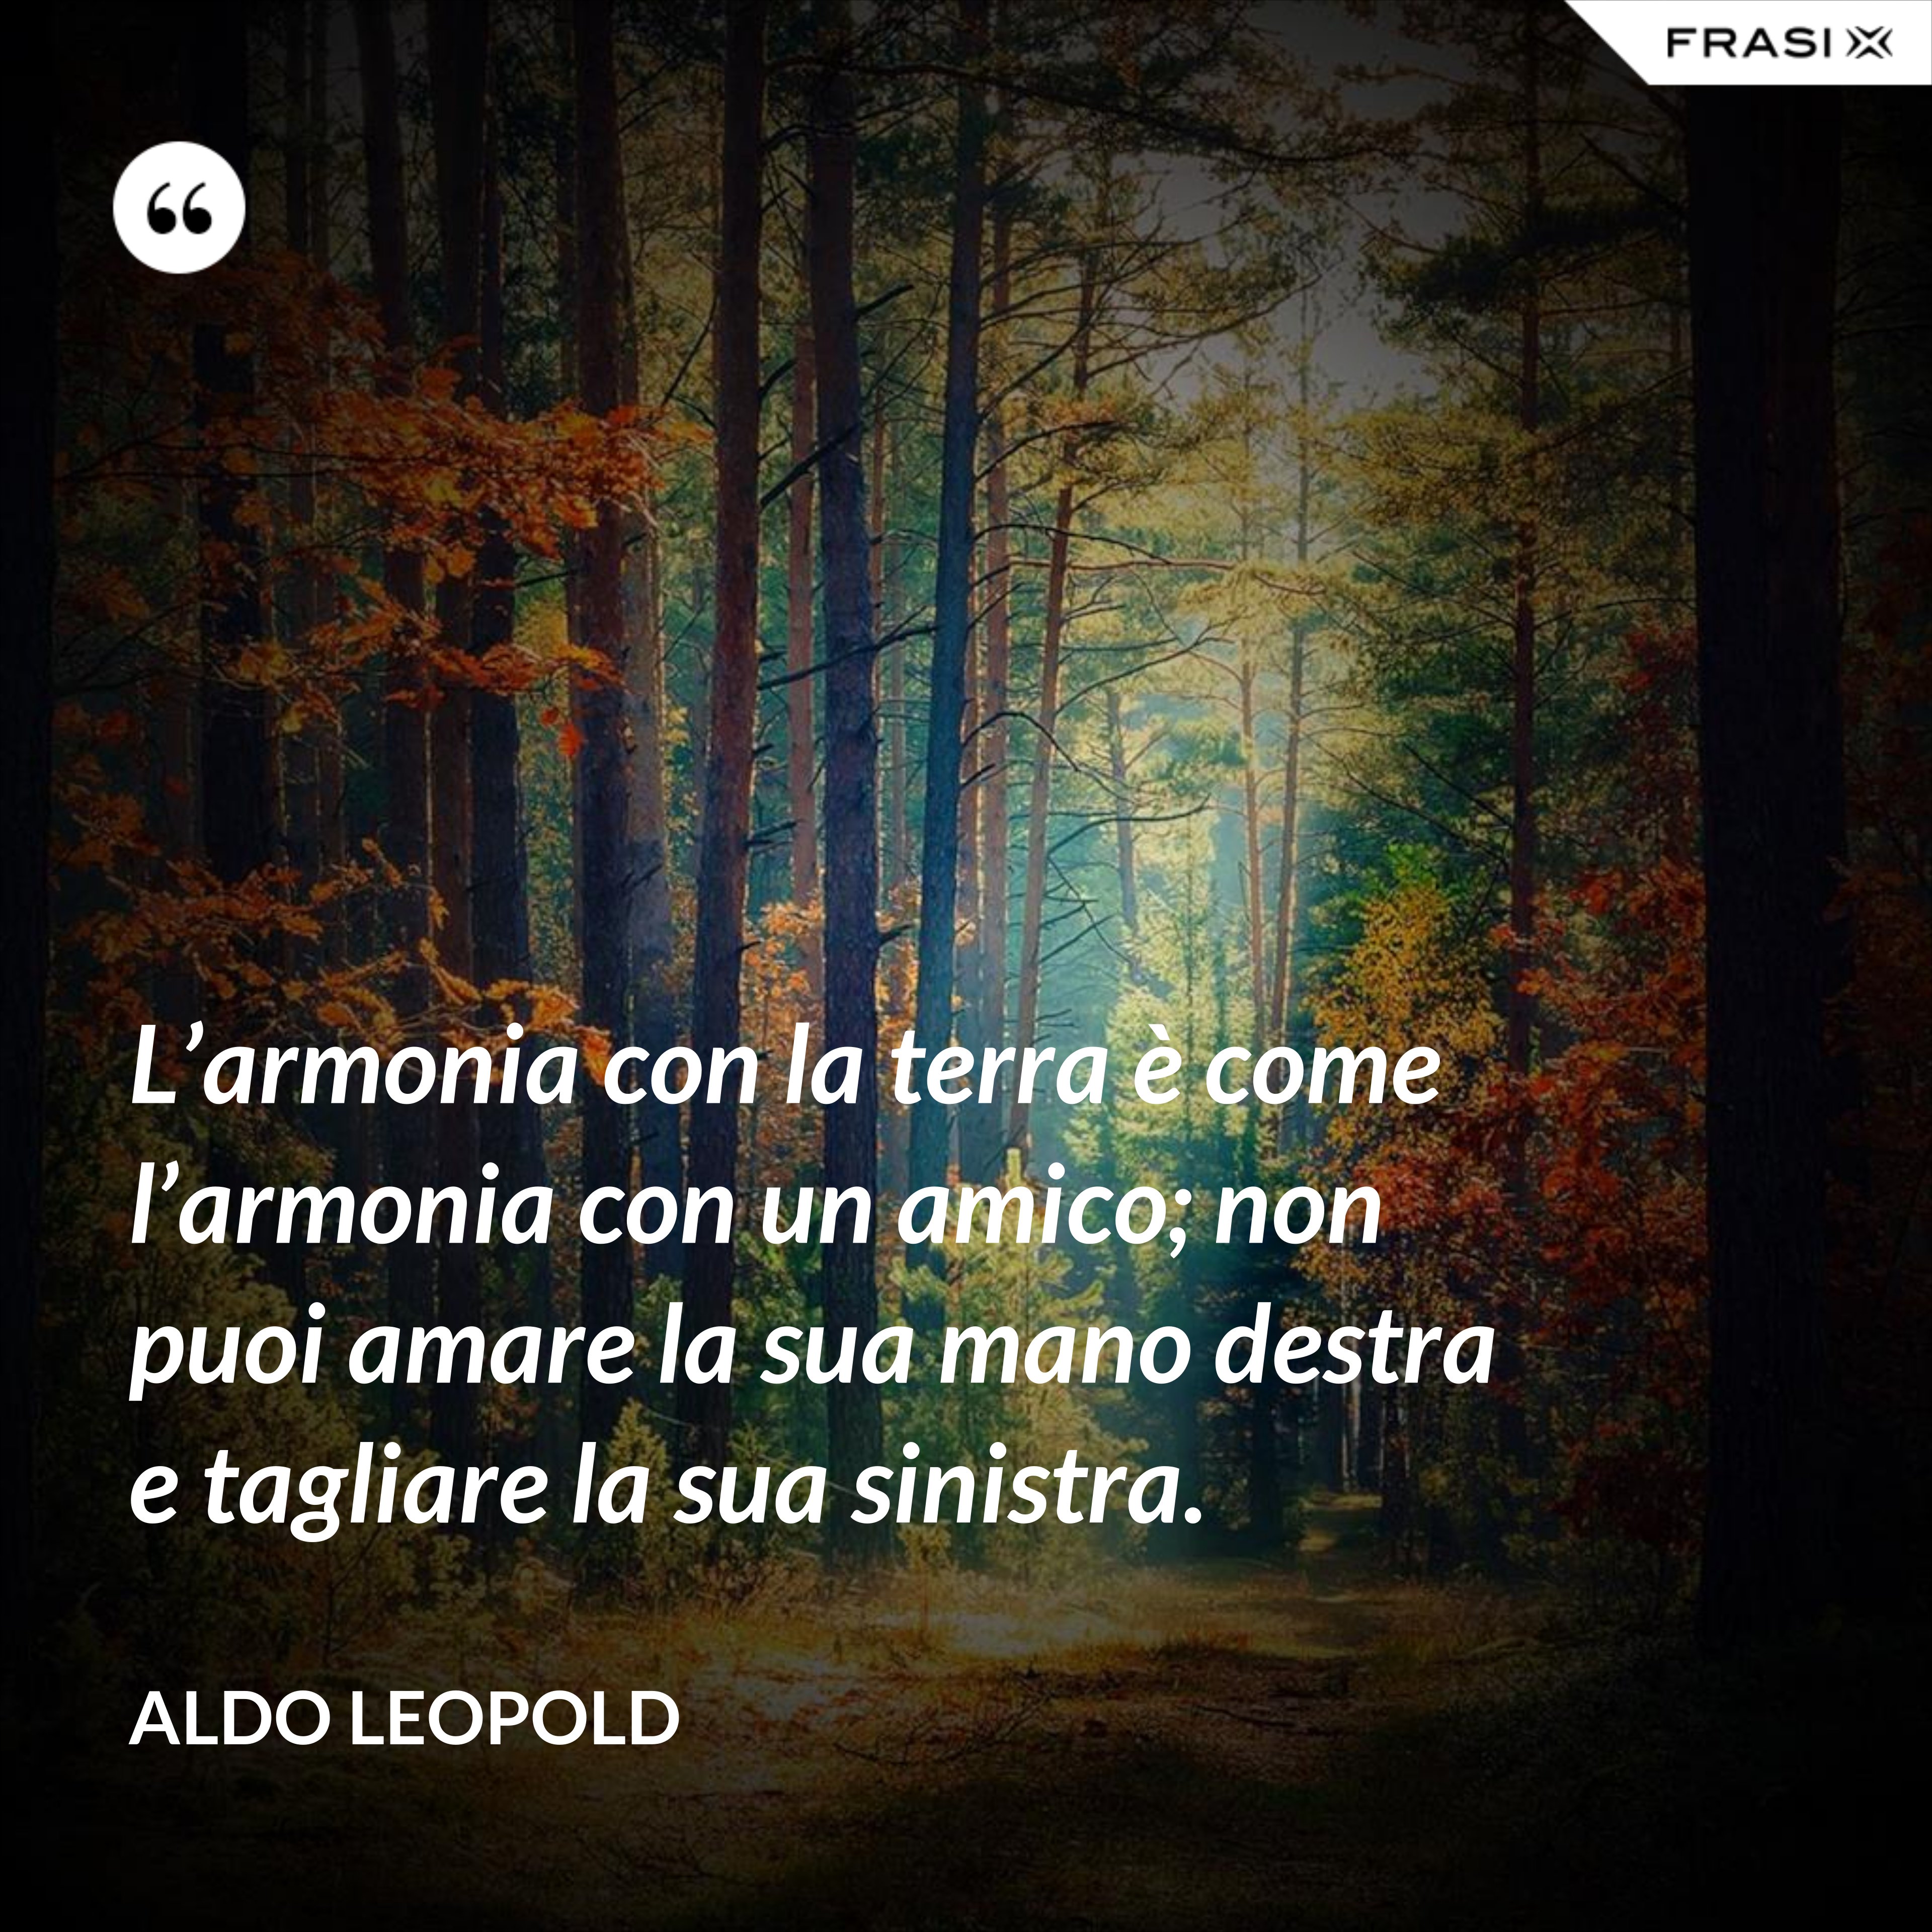 L’armonia con la terra è come l’armonia con un amico; non puoi amare la sua mano destra e tagliare la sua sinistra. - Aldo Leopold